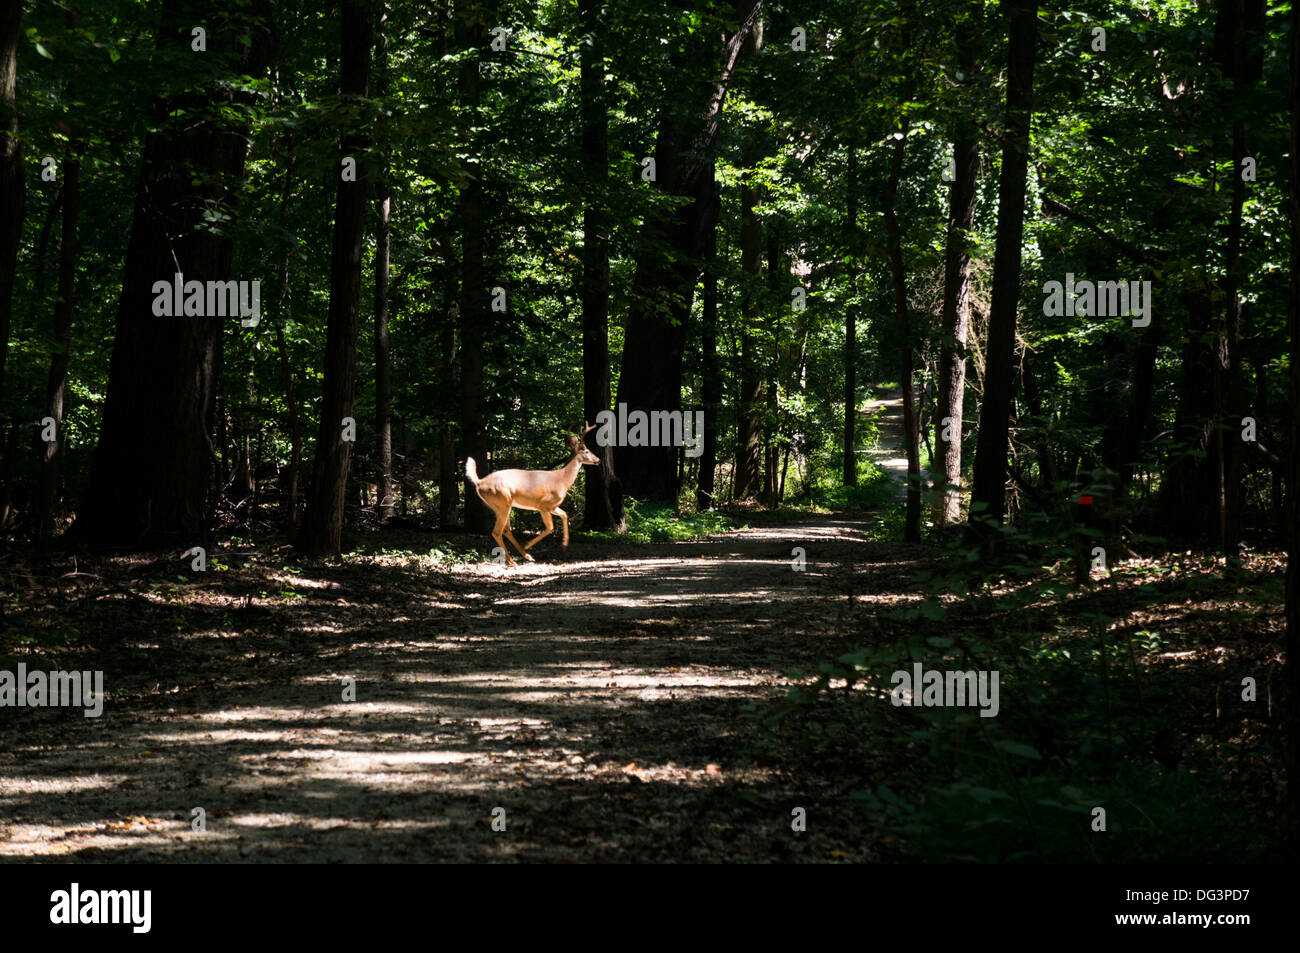 Un chevreuil traverse la forêt dans la région de Rock Creek Park à Washington, DC, USA. Banque D'Images